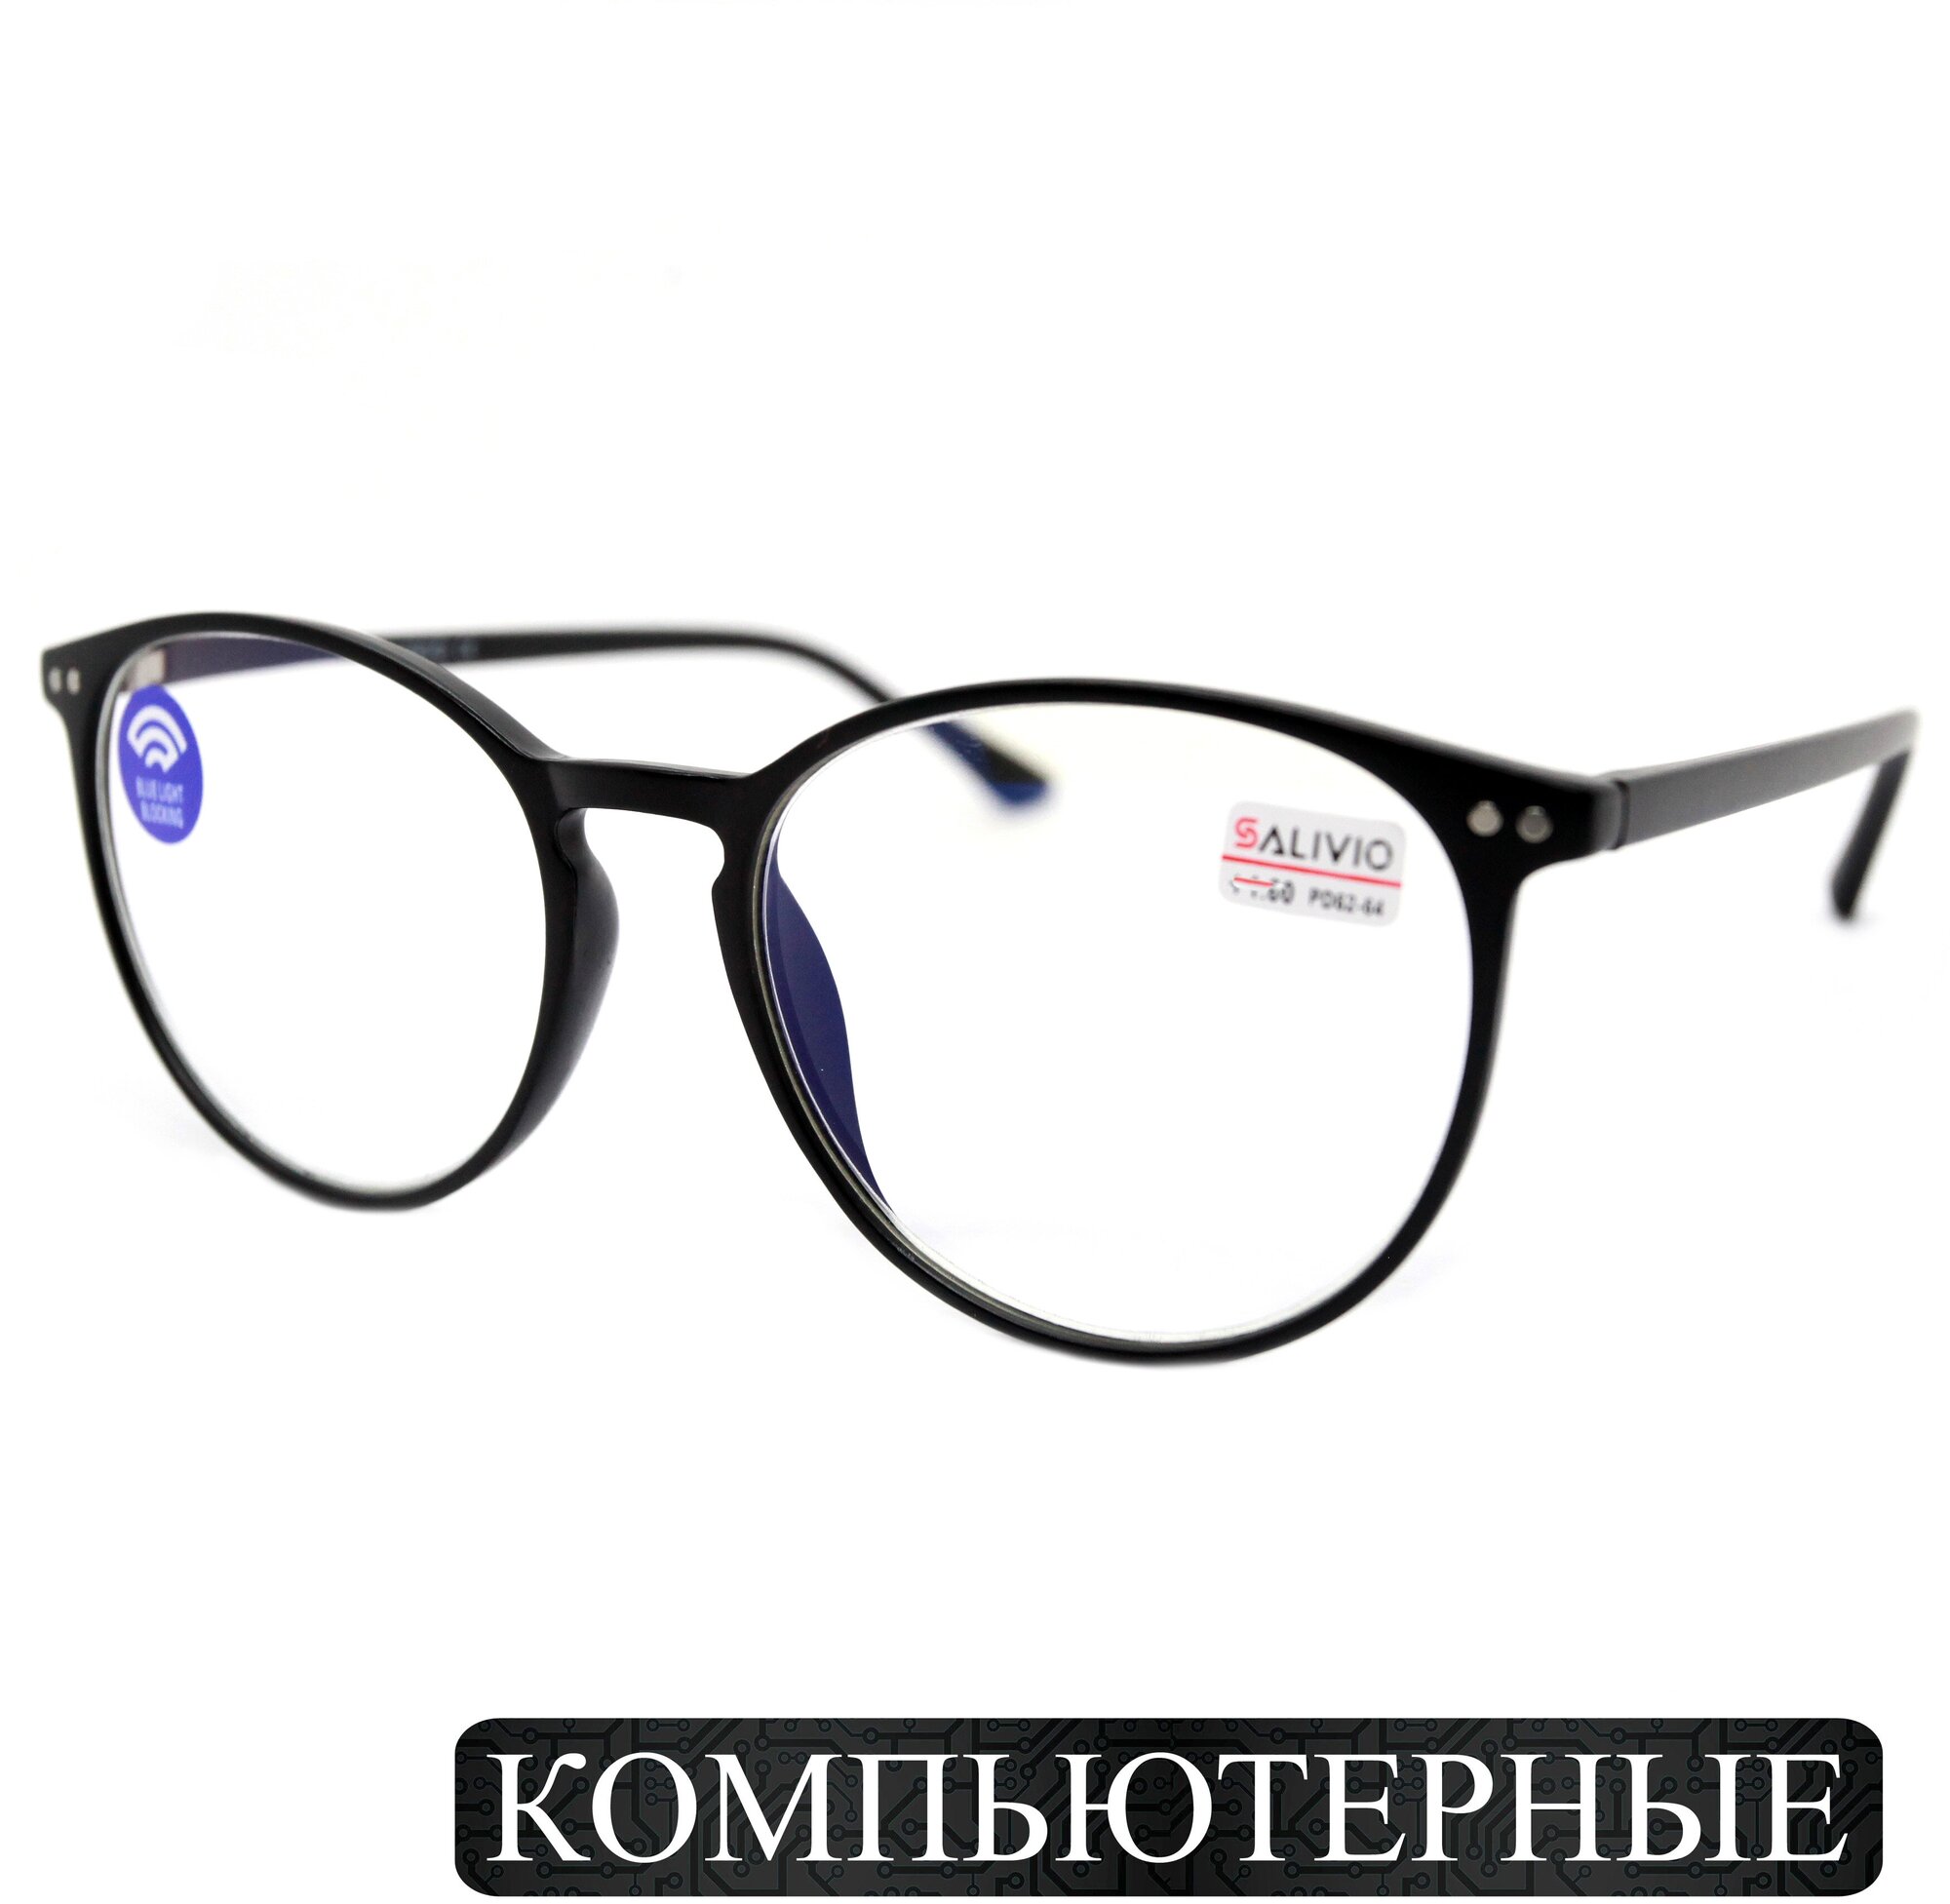 Готовые очки (-1.25) SA0017 С1 для зрения с диоптриями корригирующие женские очки для дали круглые, без футляра, РЦ 62-64